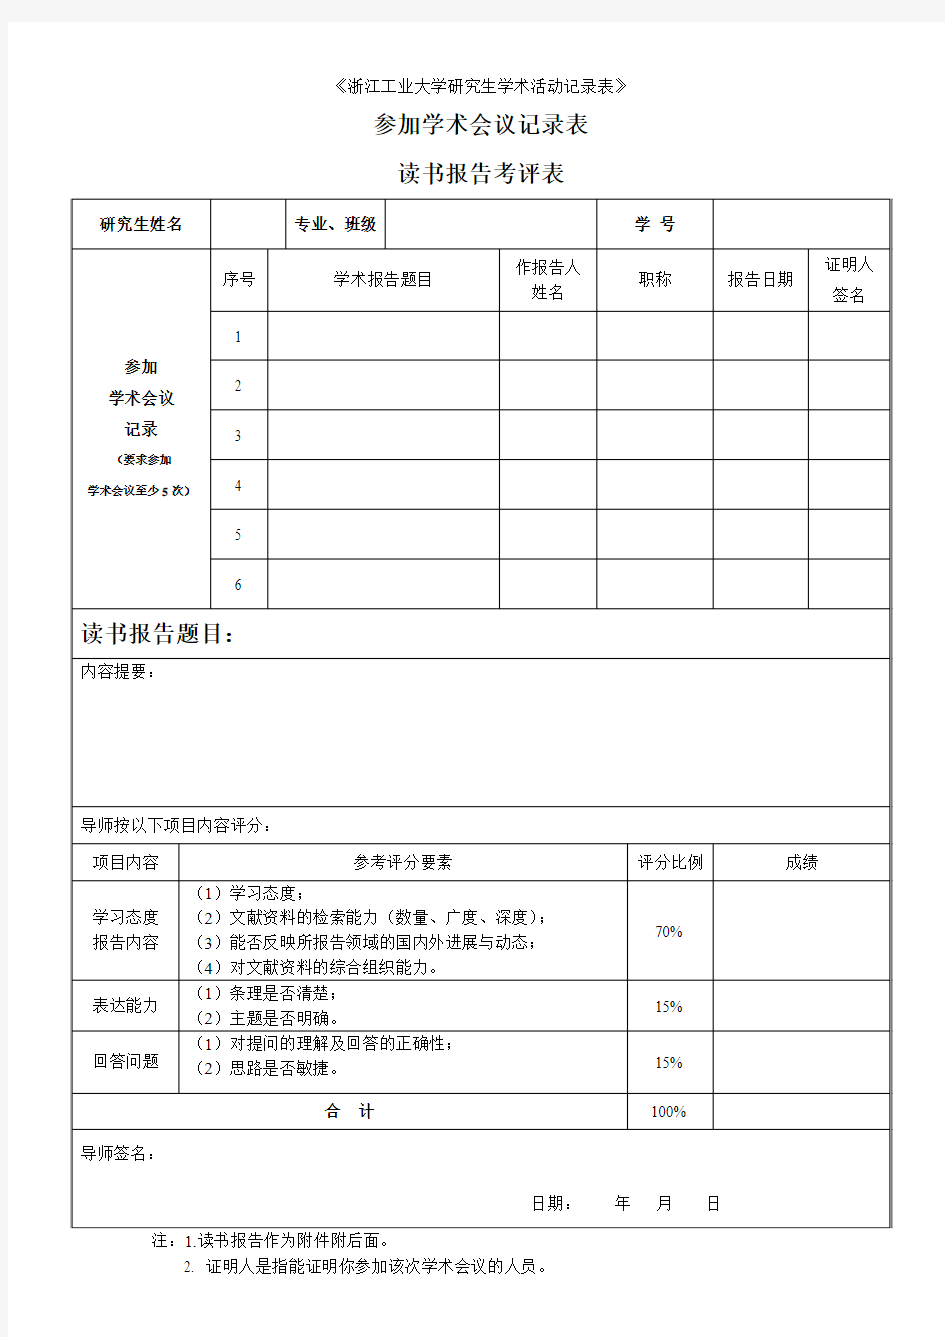 《浙江工业大学研究生学术活动记录表》读书报告考评表